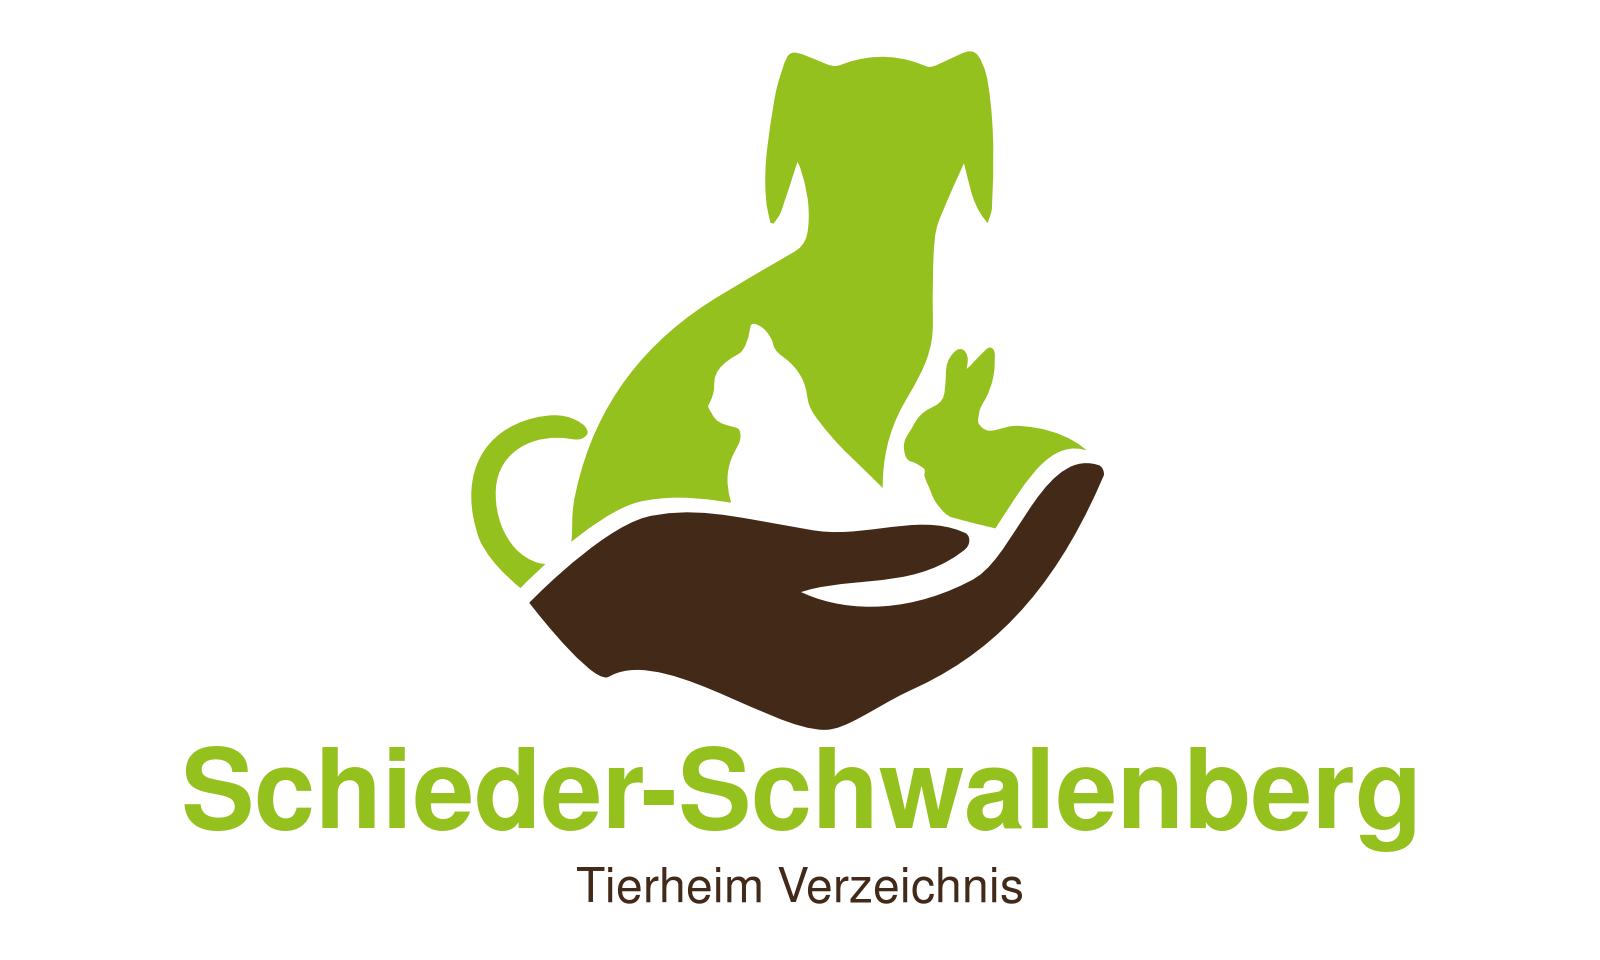 Tierheim Schieder-Schwalenberg